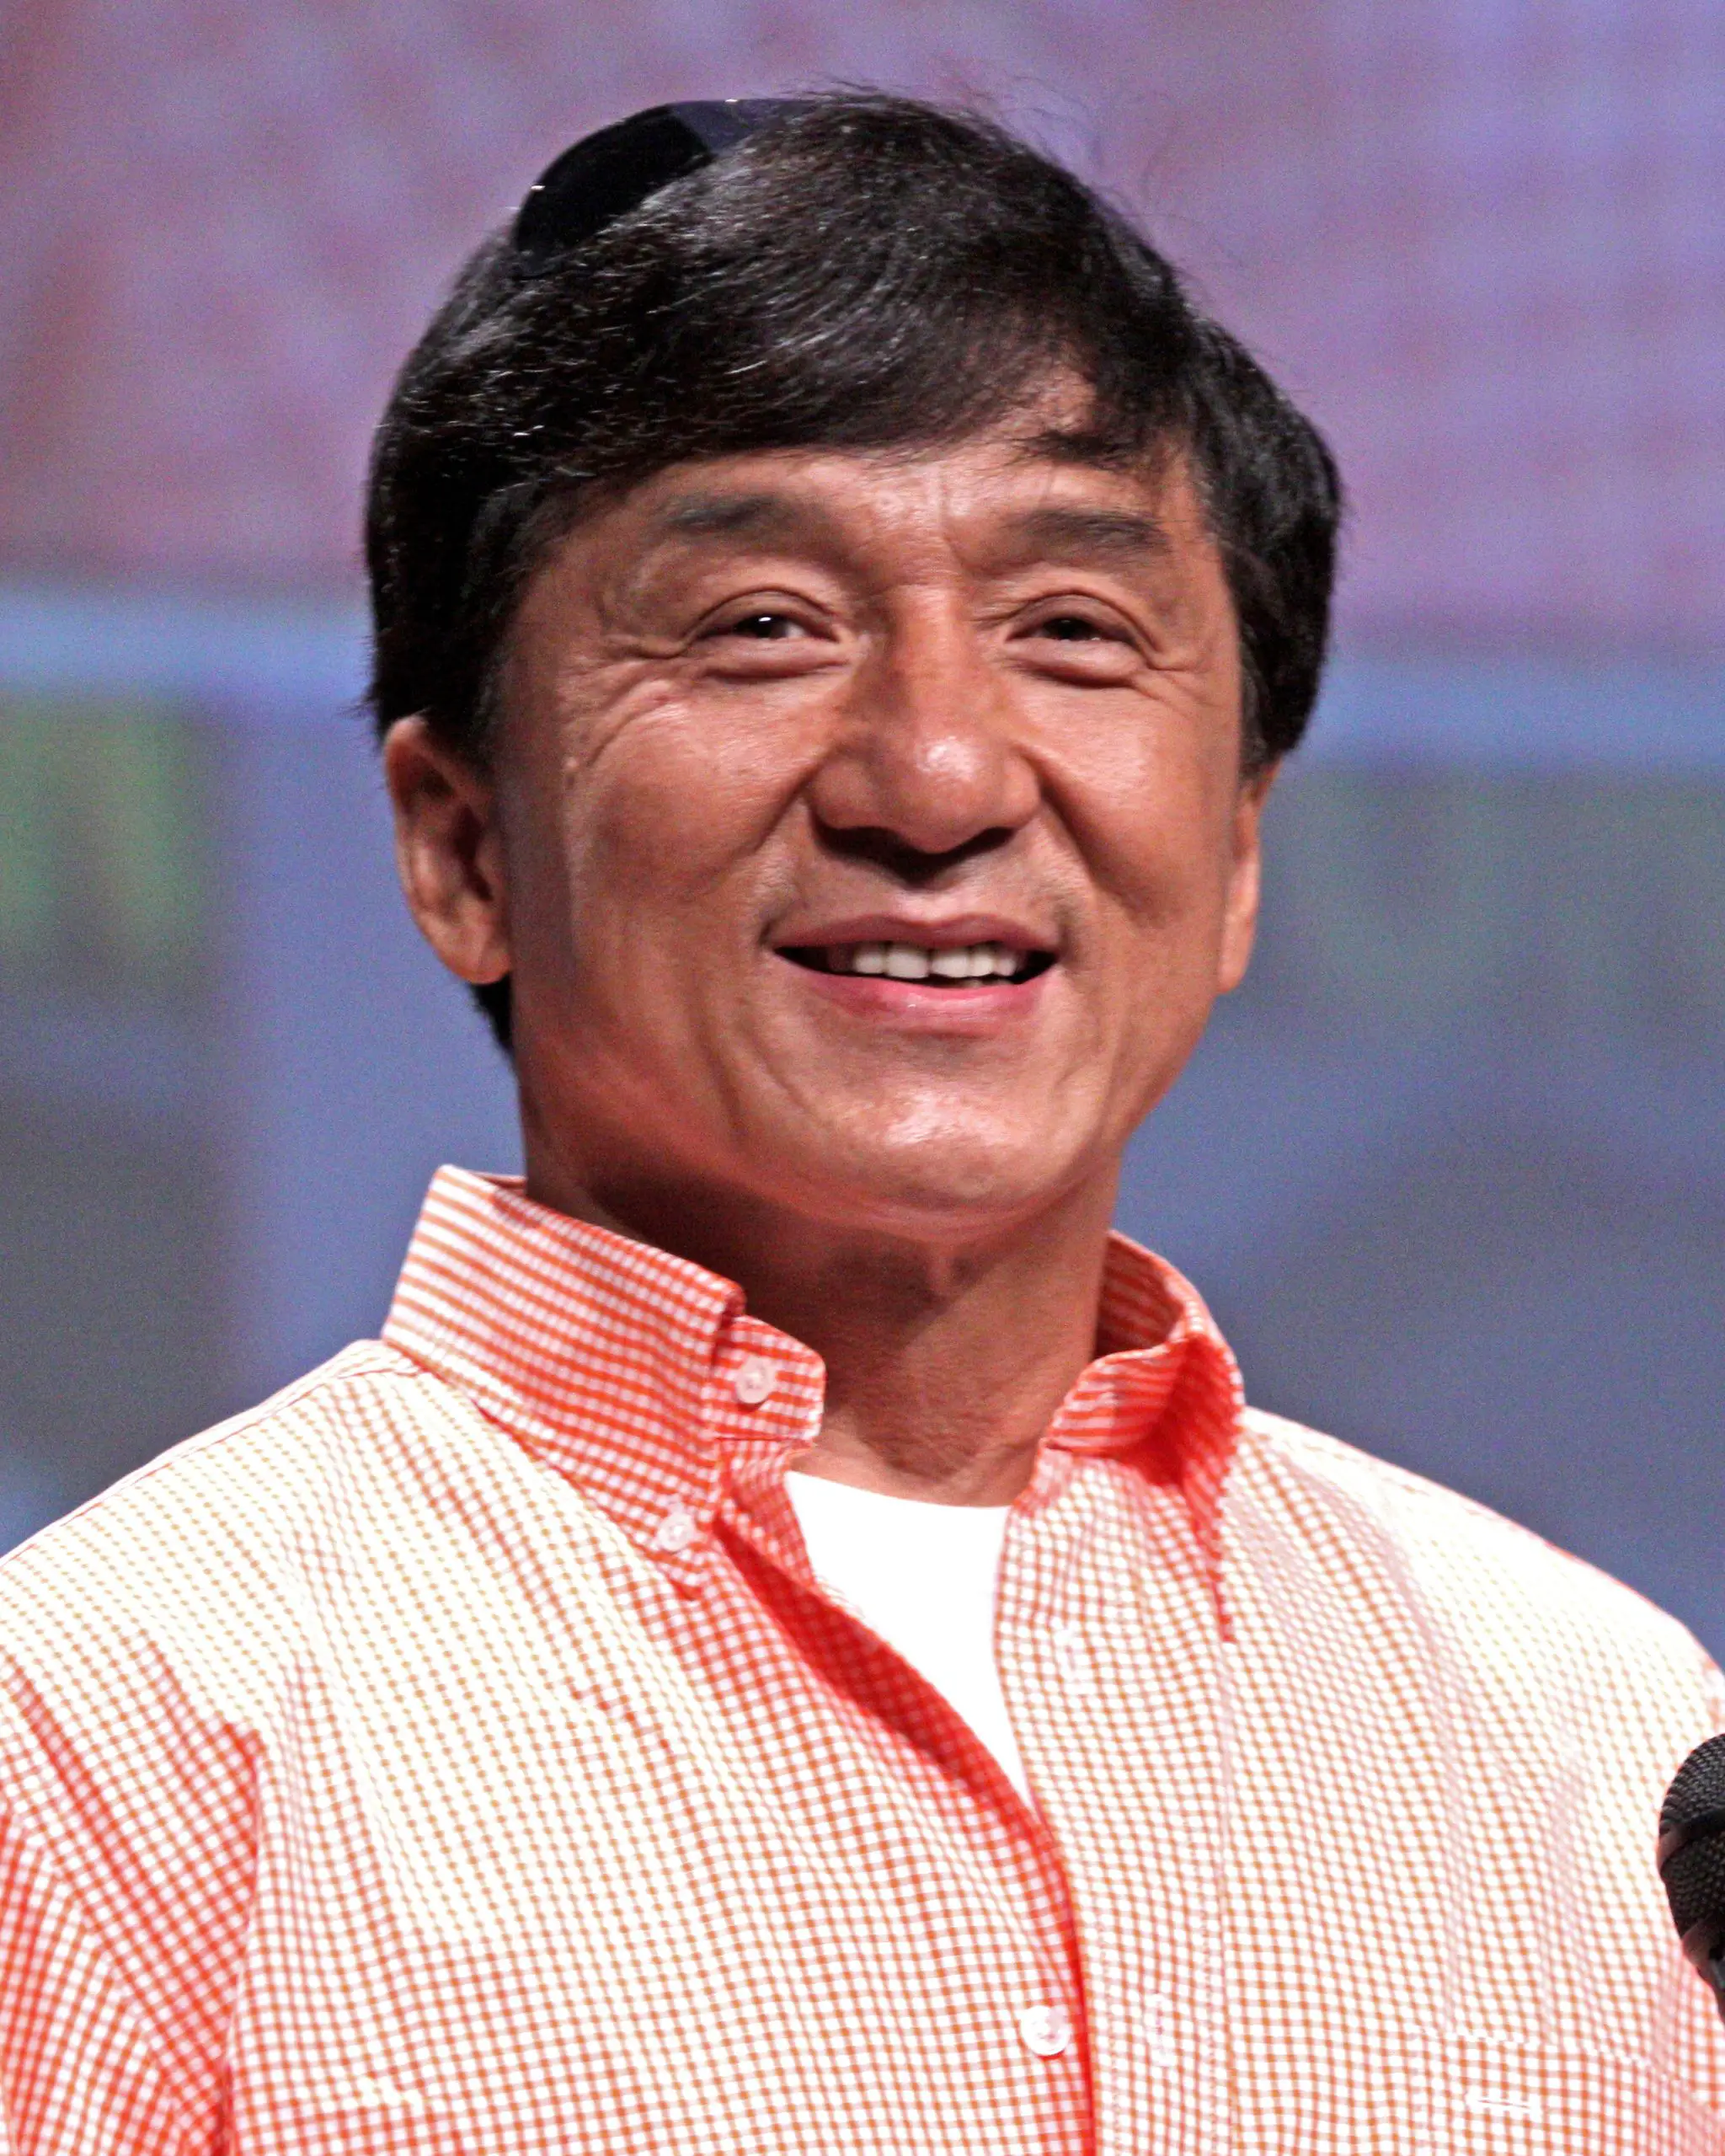 Datos poco conocidos sobre Jackie Chan: Sus padres querían venderlo cuando era apenas un bebé -Revista Interesante